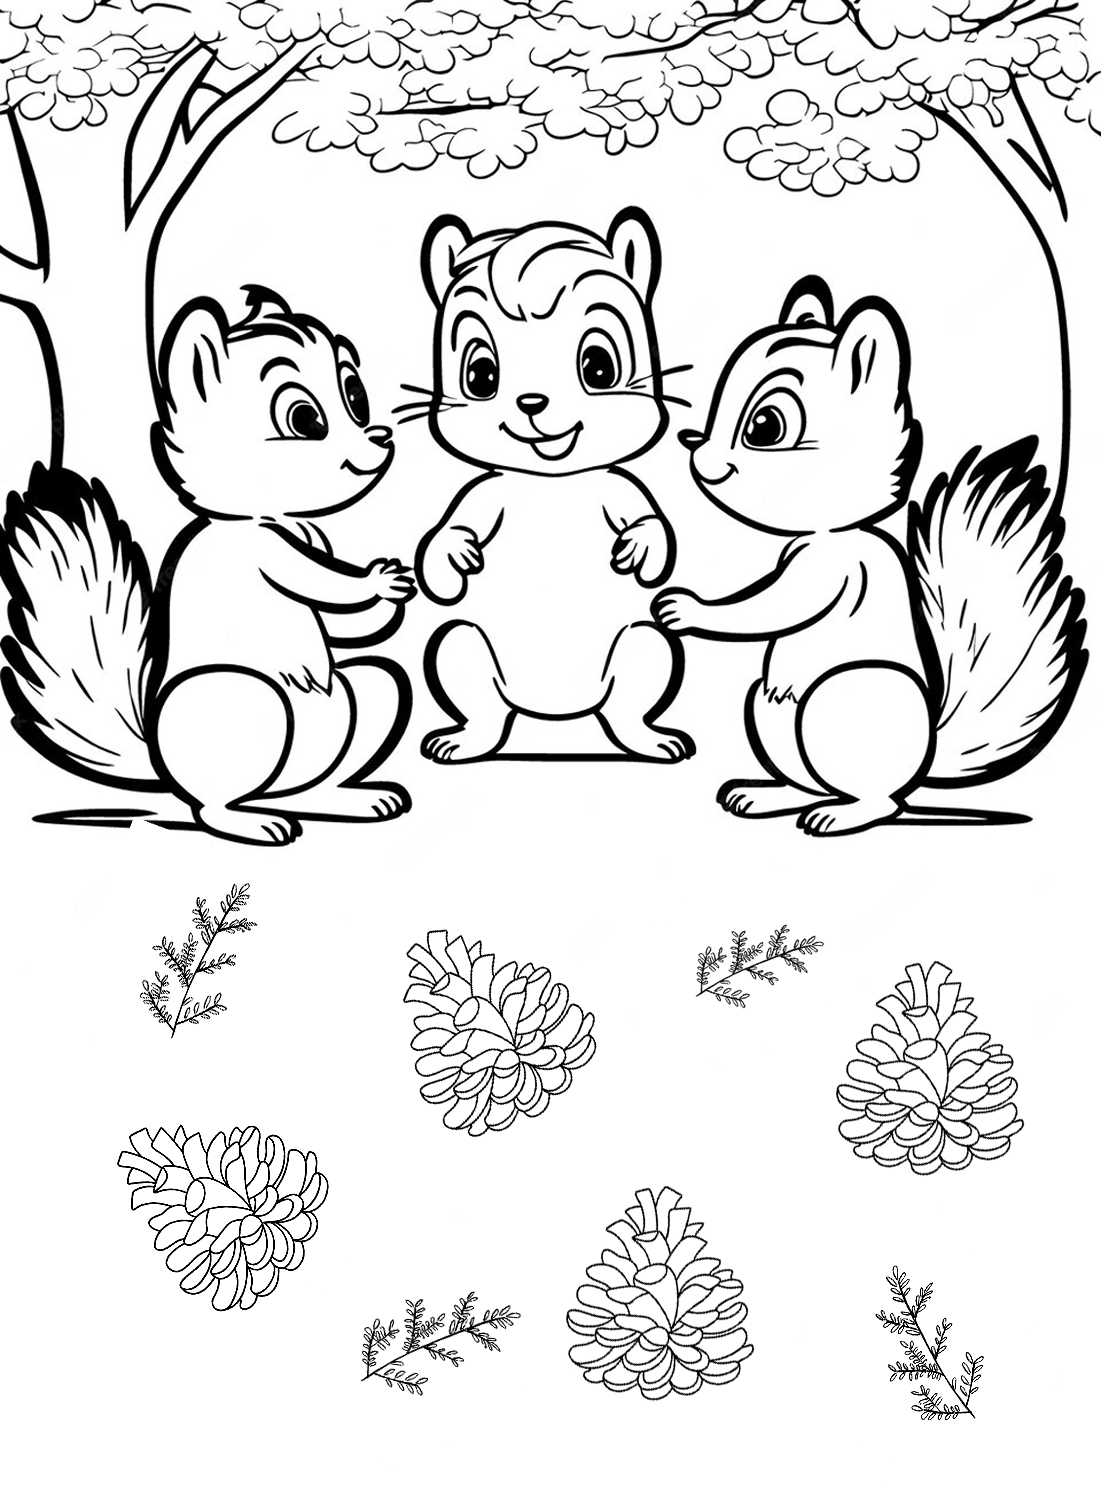 Imagen para colorear de ardilla de Squirrel